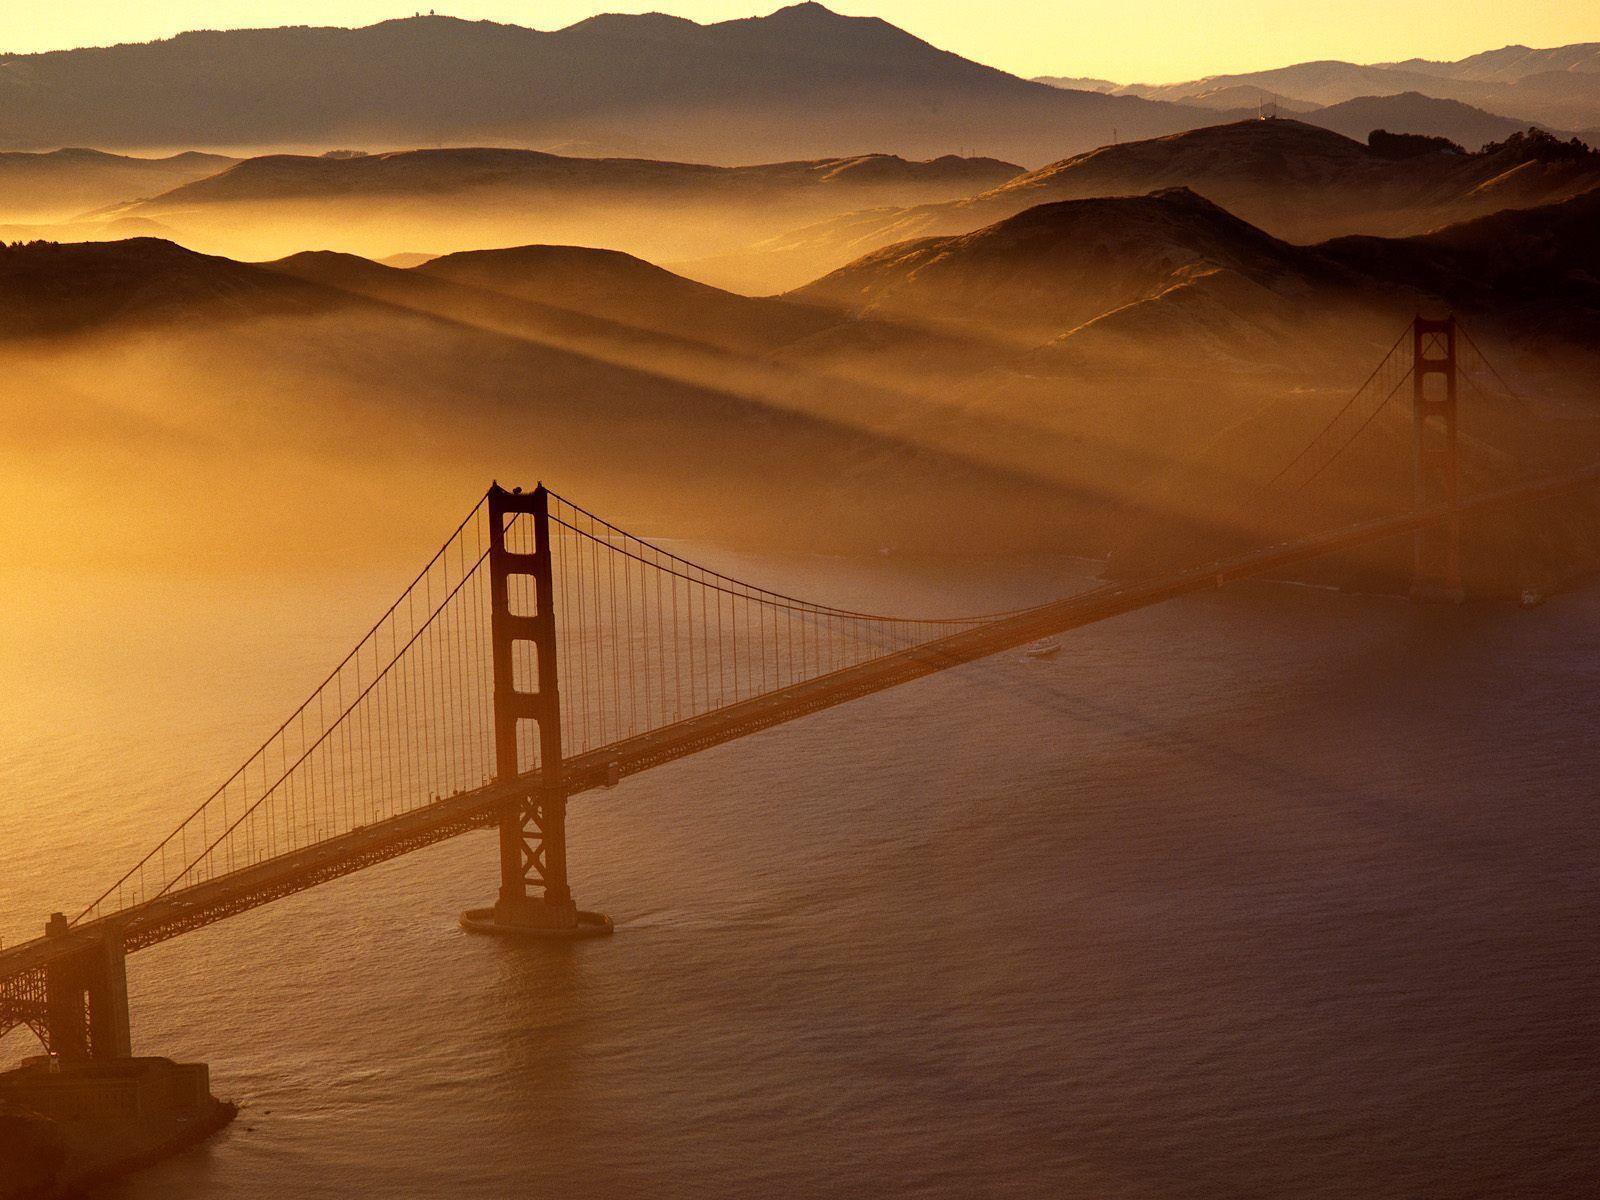 Golden Gate bridge / Marin Headlands / San Francisco / California